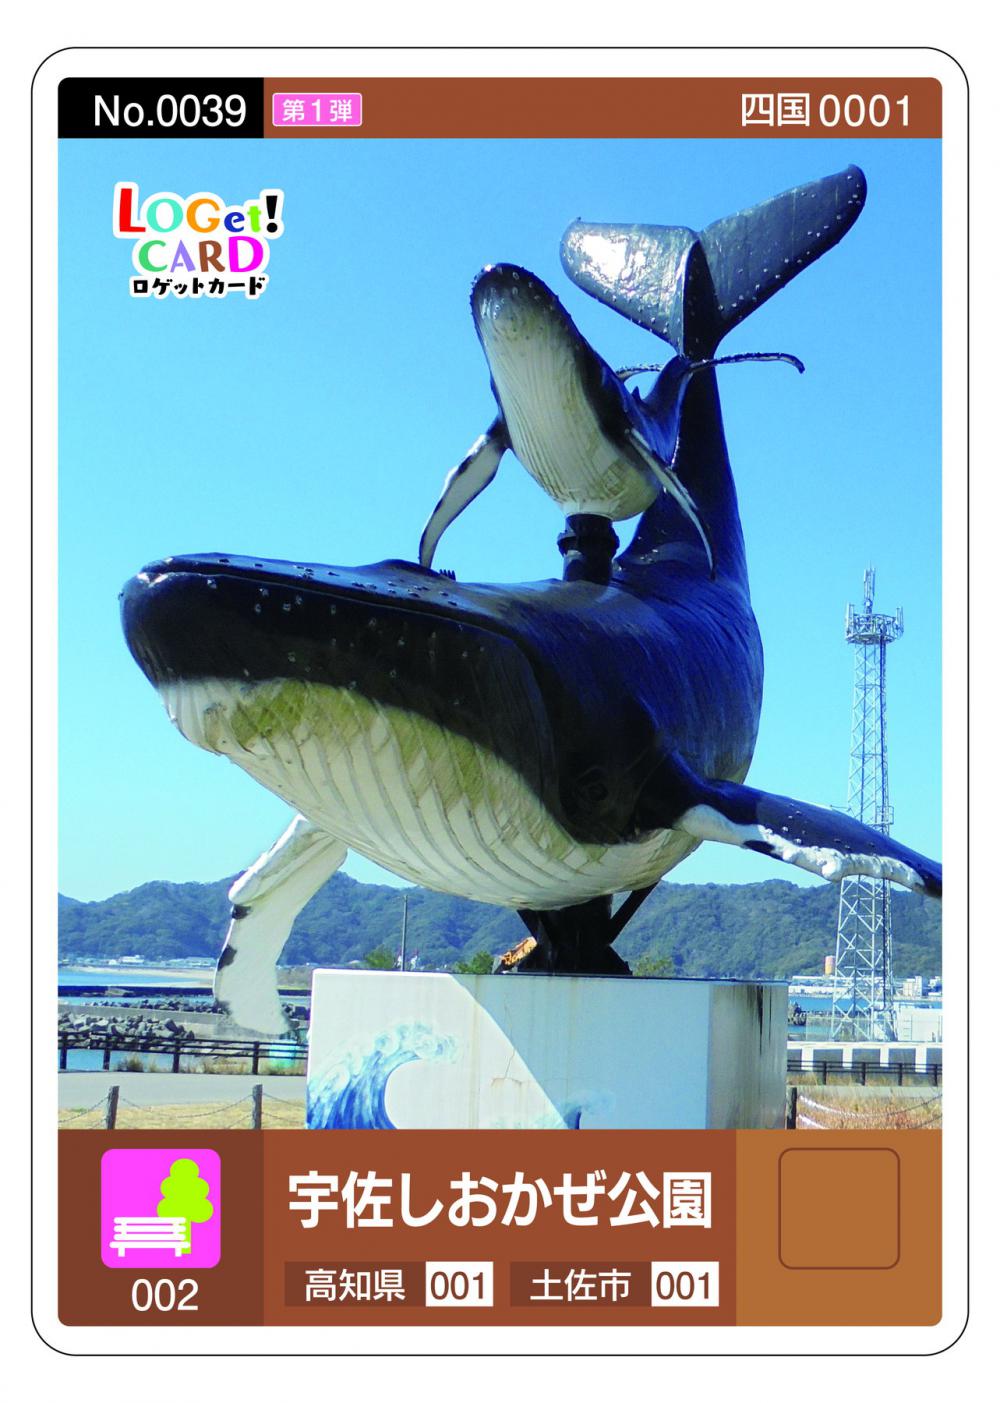 LOGet！CARD（ロゲットカード) | 特集 | 一般社団法人 仁淀ブルー観光 